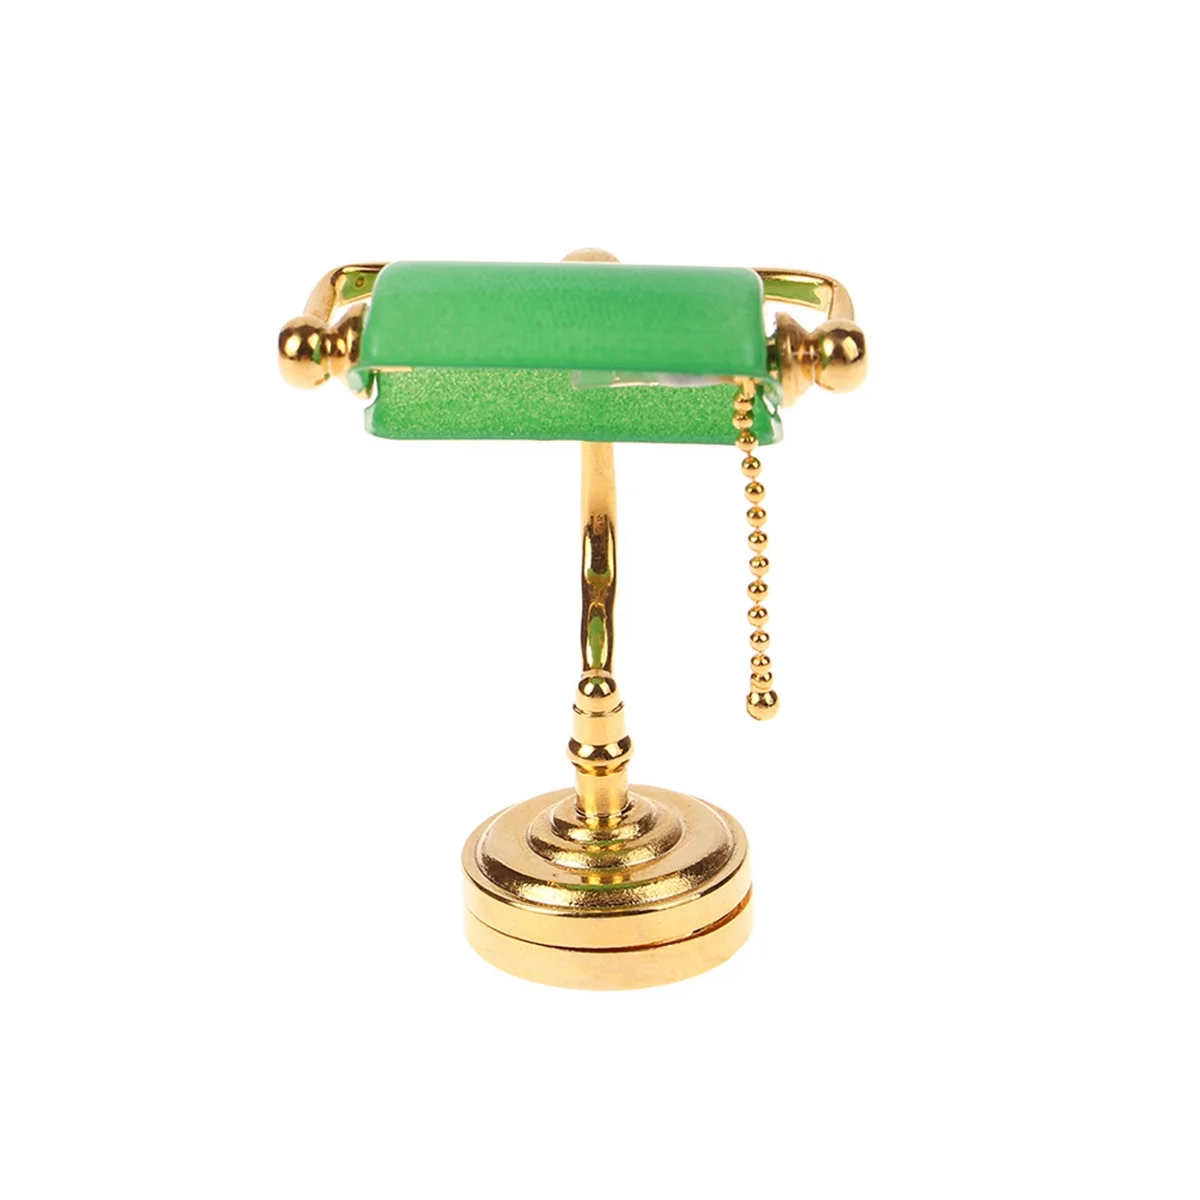 1:12 בית בובות מיניאטורי ריהוט וינטג ' מנורת שולחן מנורת LED ירוק הדוור אור תאורה דגם בית הבובות אביזרים